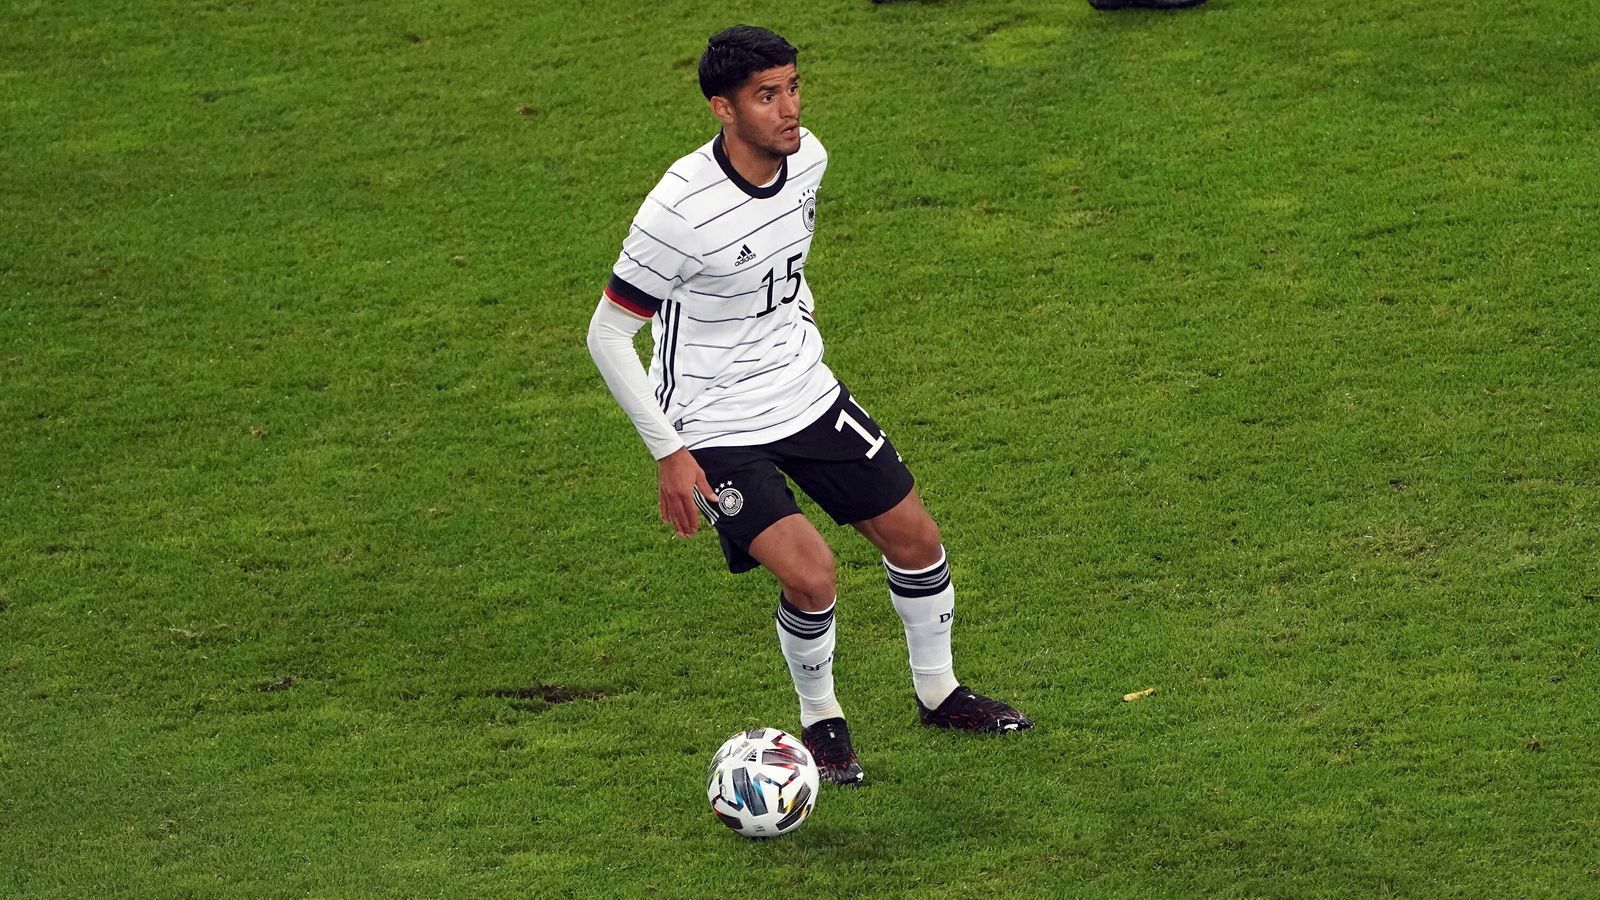 
                <strong>Mahmoud Dahoud (Borussia Dortmund</strong><br>
                 - Position: Zentraler Mittelfeldspieler -  - A-Nationalmannschafts-Debüt: 7. Oktober 2020 -  - U21: 2016-19
              